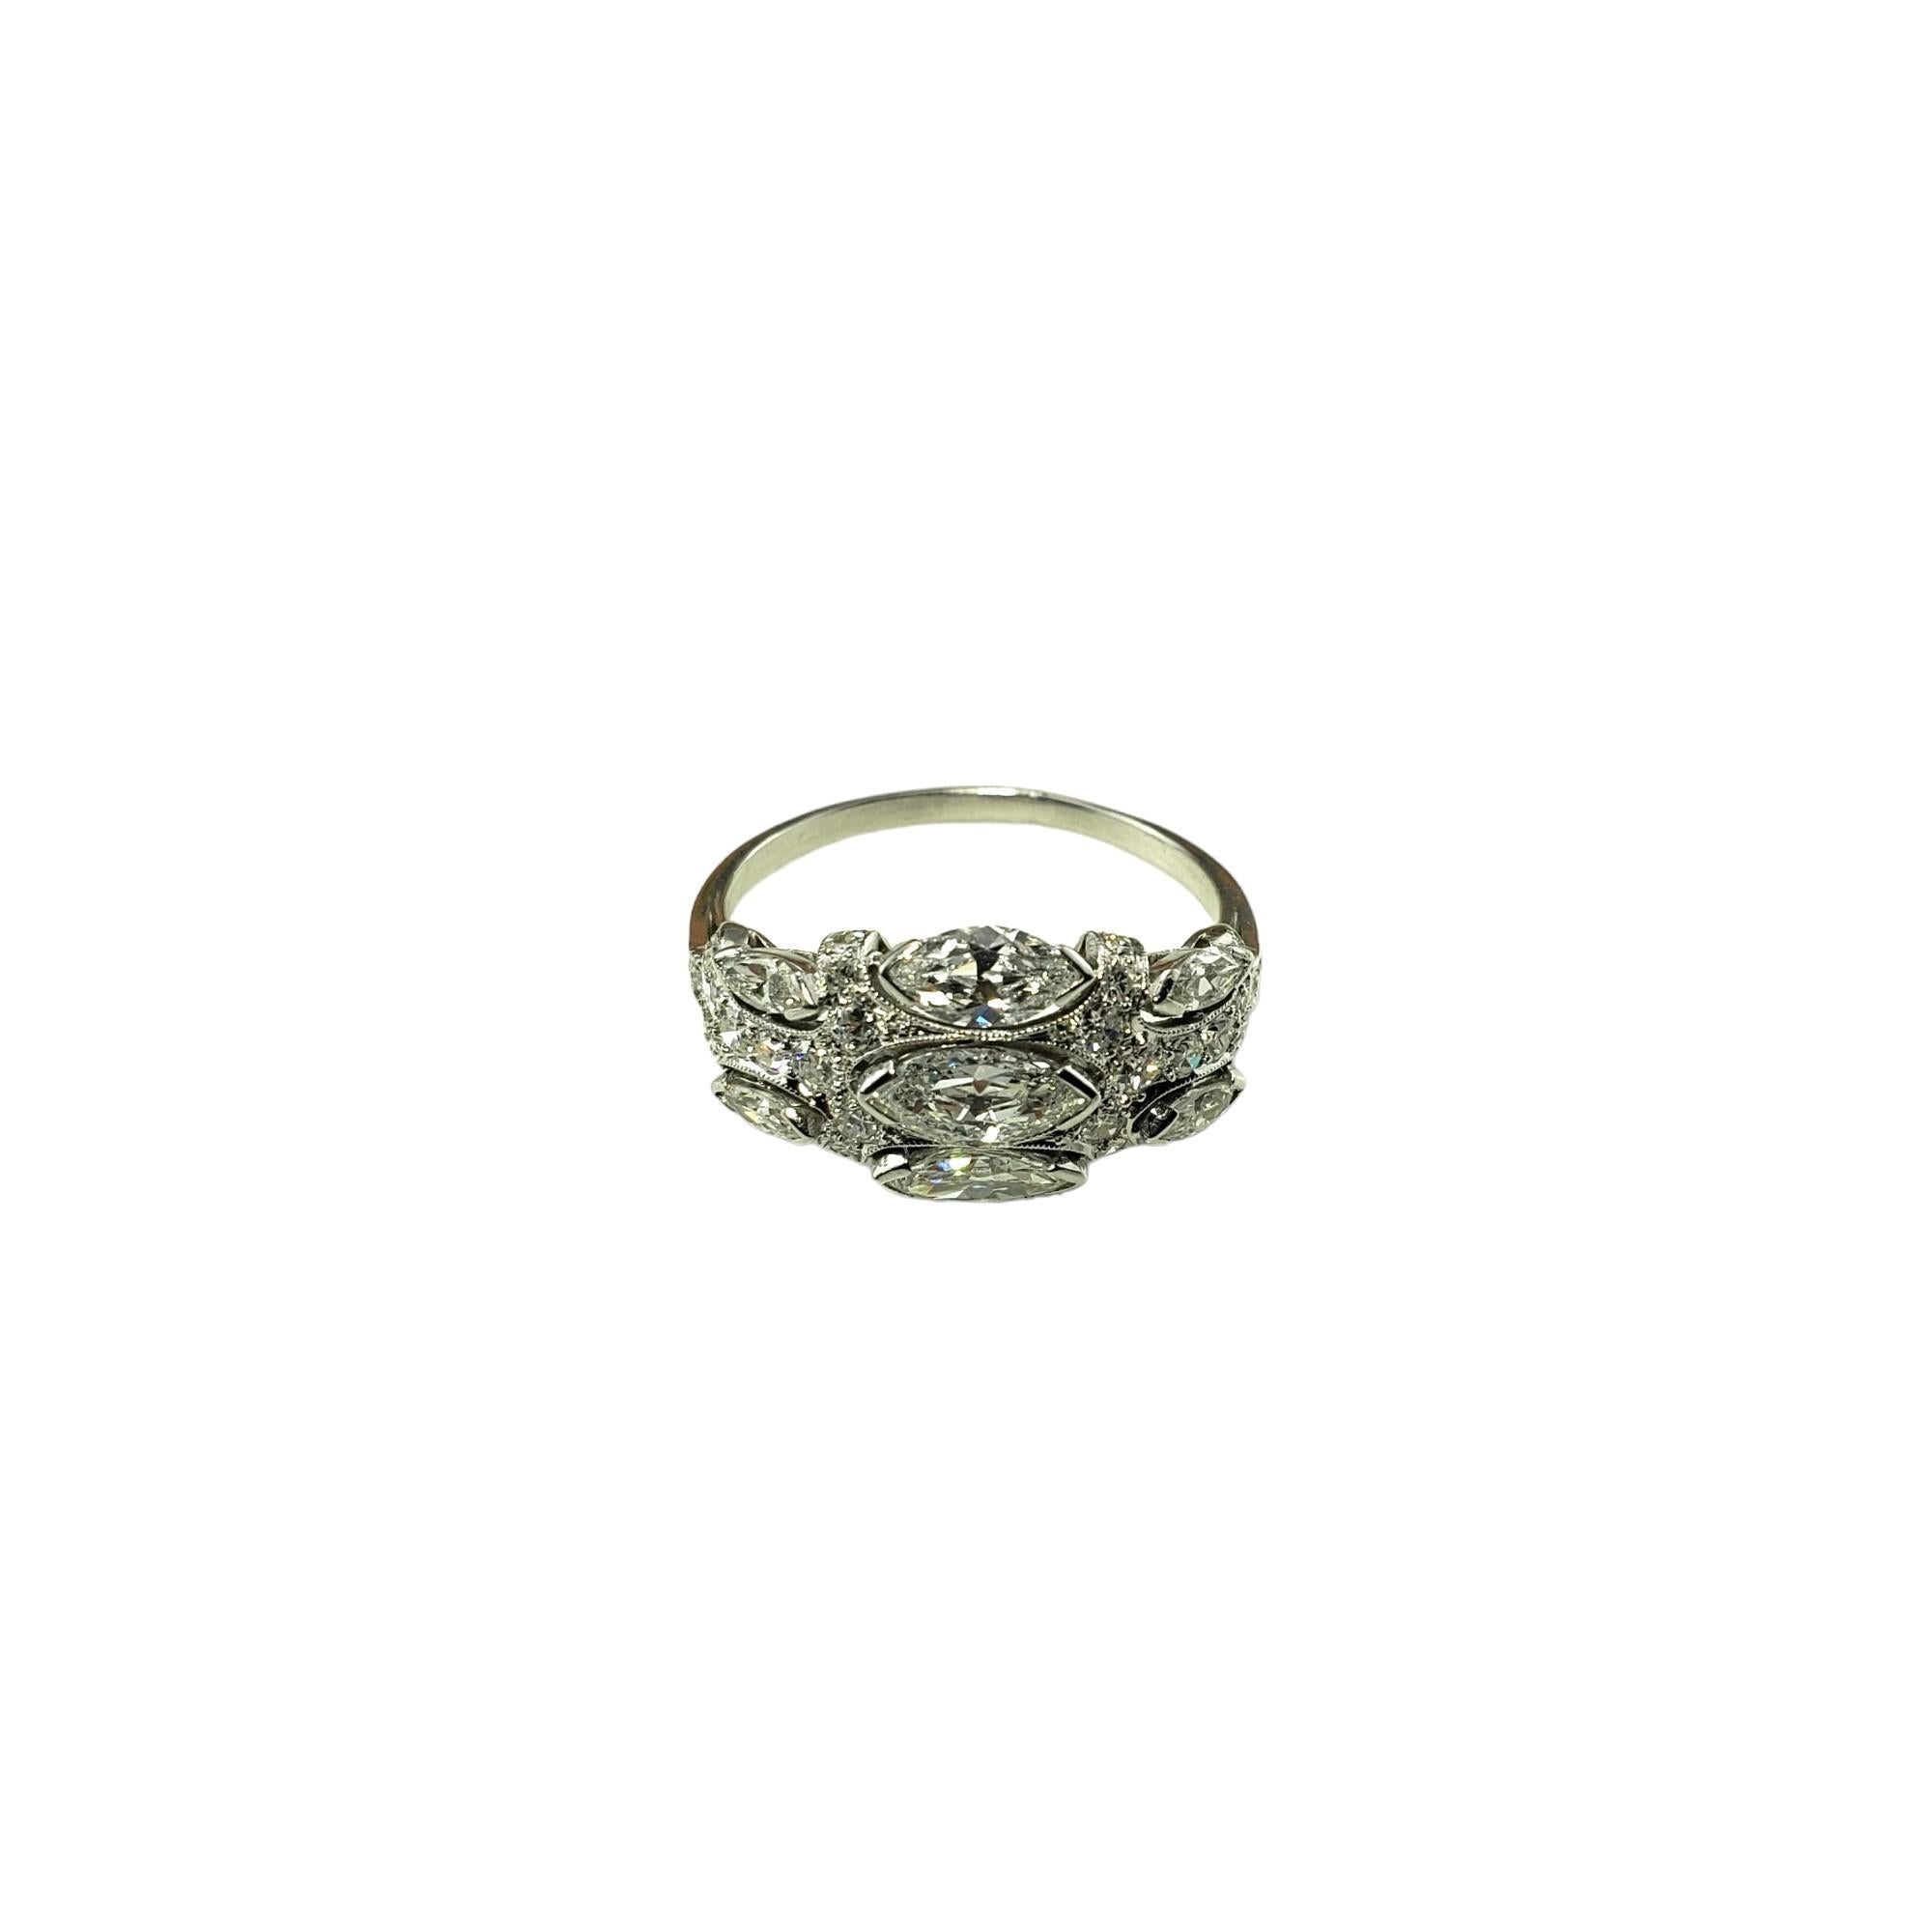 Vintage 14K White Gold Diamond Ring Size 8 JAGi Certified-

Cette bague étincelante présente sept diamants marquise et 33 diamants taille unique sertis classiquement en or blanc 14K.  Largeur :  10 mm.  Tige : 1.5 mm.

Poids total des diamants : 